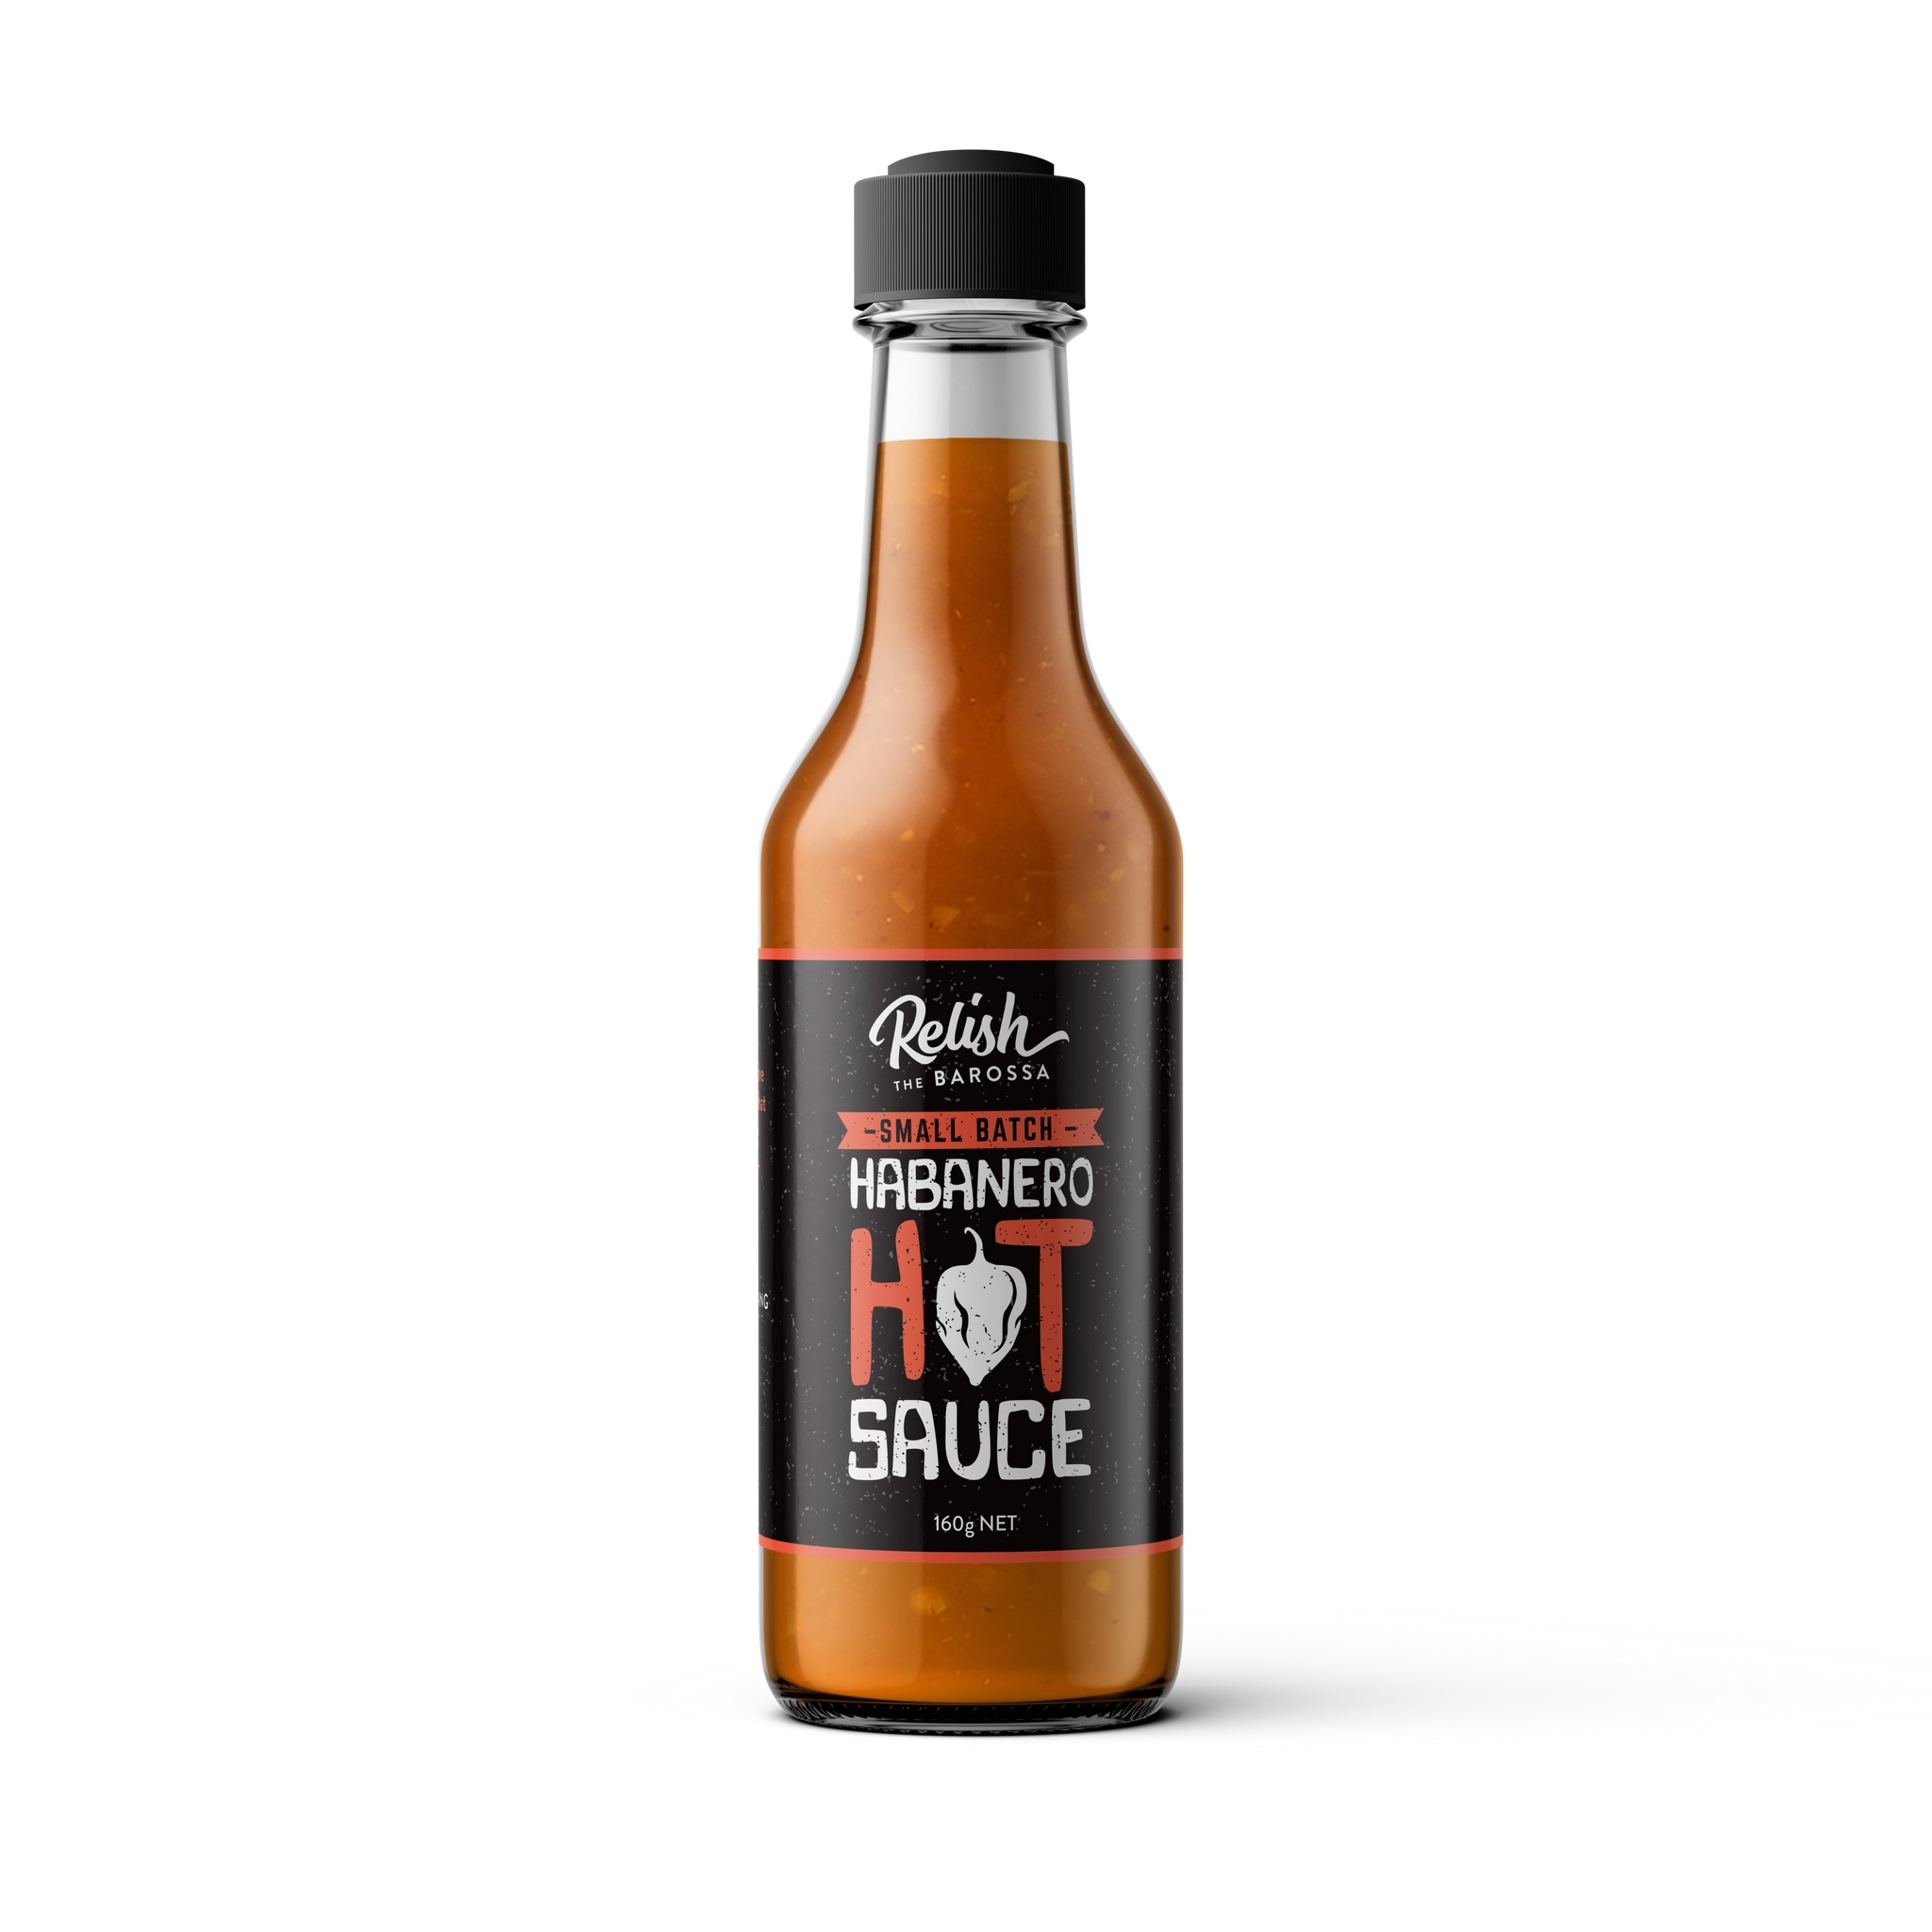 Relish The Barossa Habanero Hot Sauce 160g